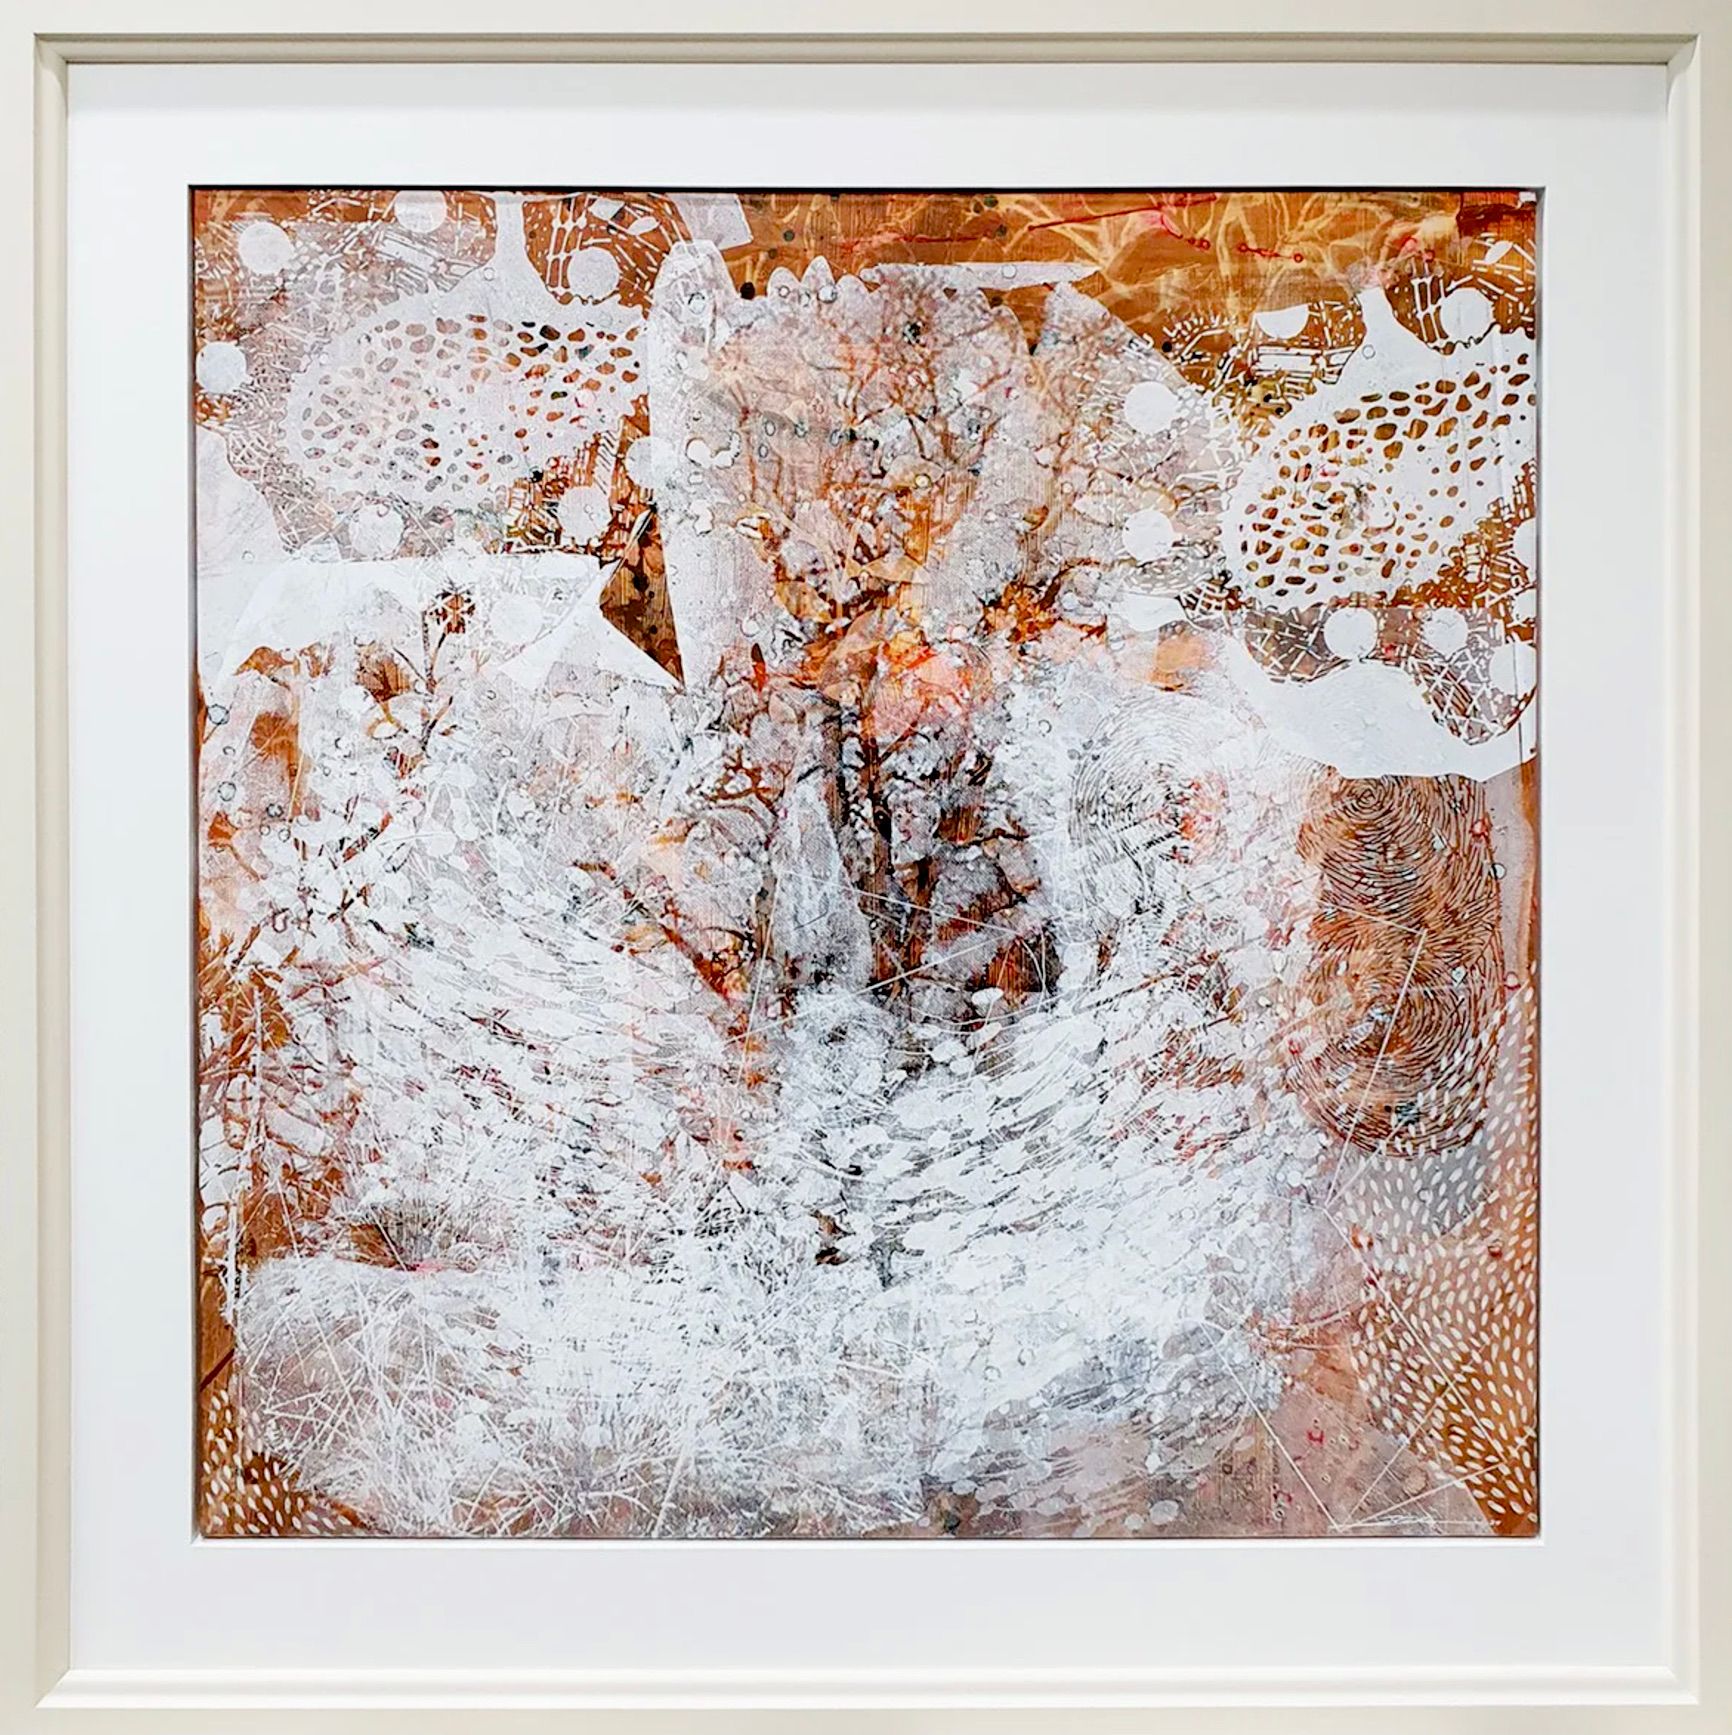 Dieter Nusbaum pintura abstracta serigrafía árbol sin hojas tormenta de nieve y formas de la naturaleza